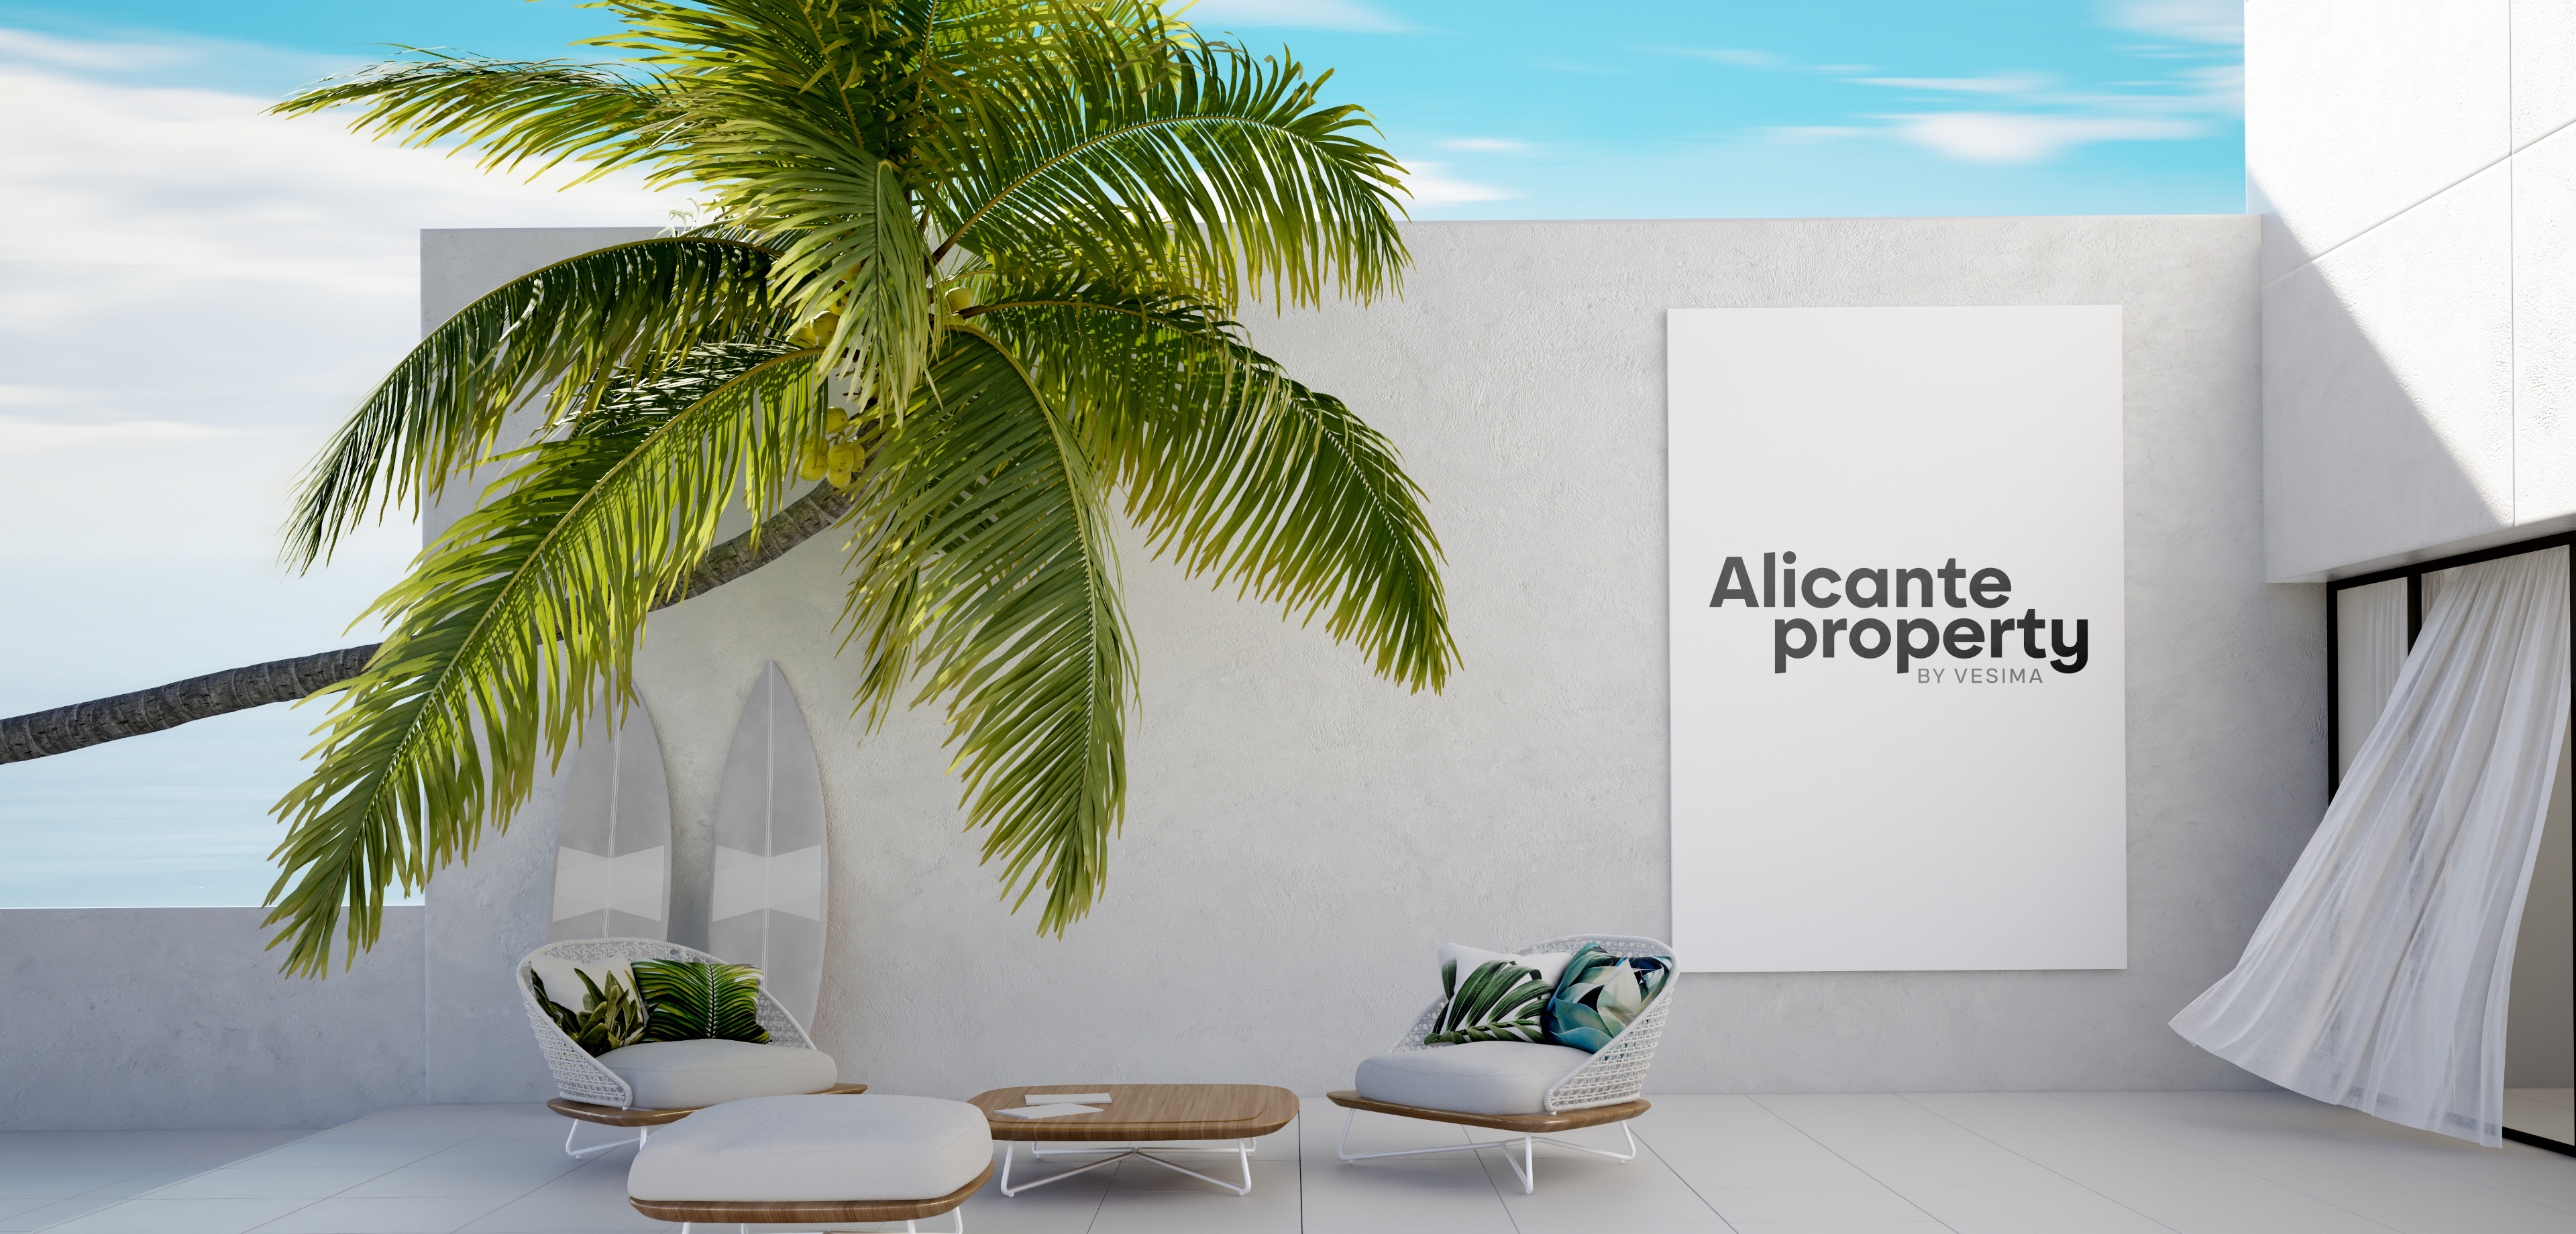 Finn ditt hus/villa eller bolig i Alicante.